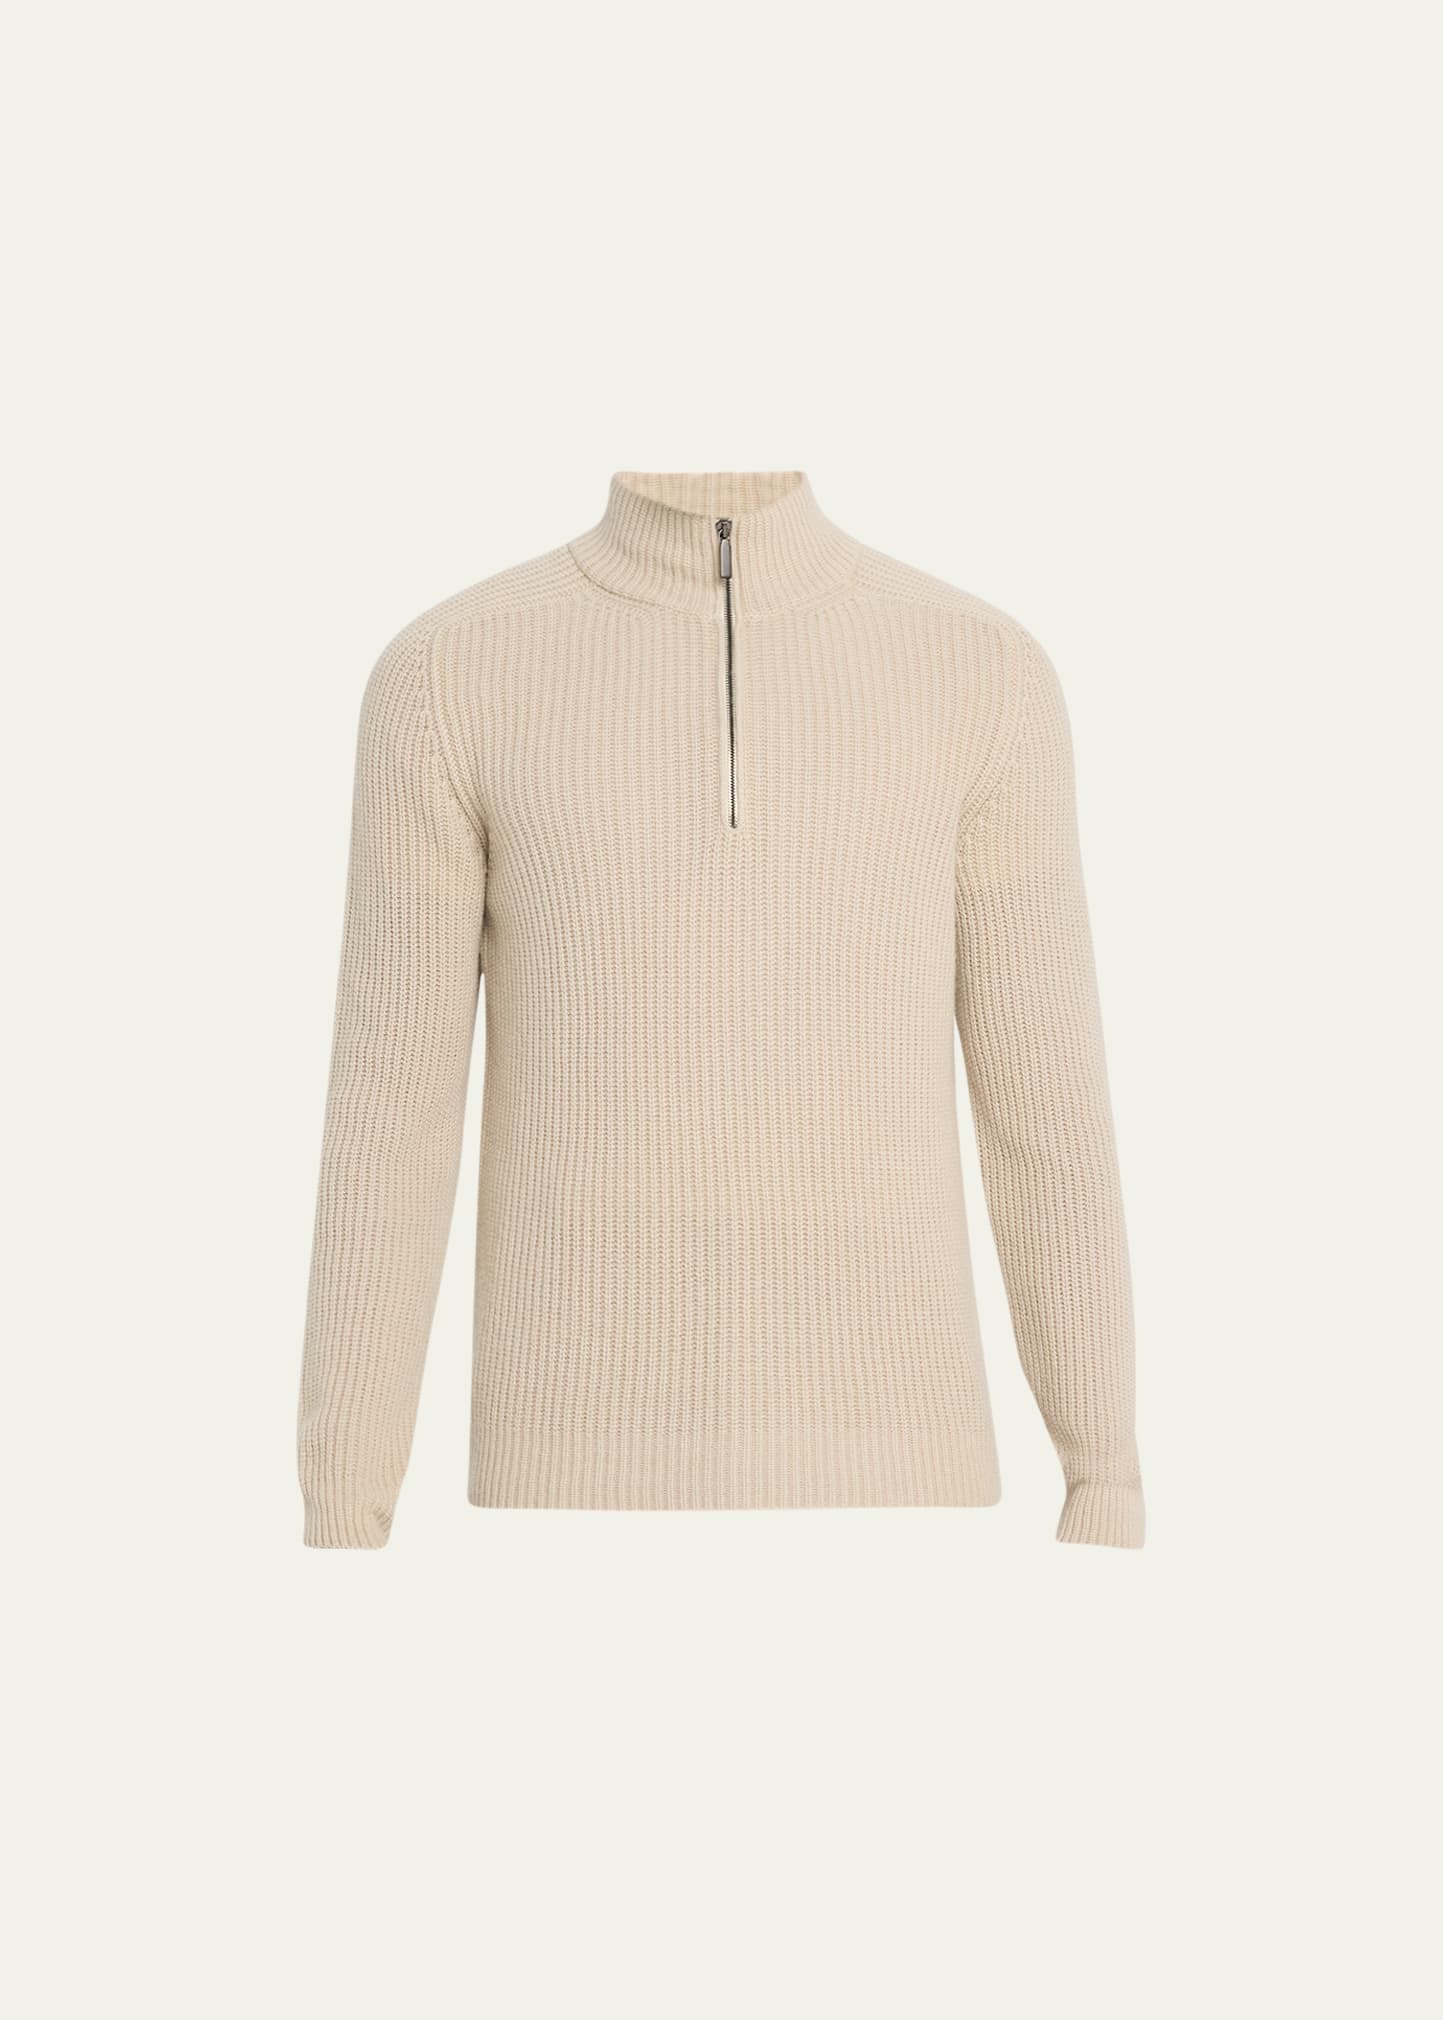 Men's Cashmere Rib Quarter-Zip Sweater